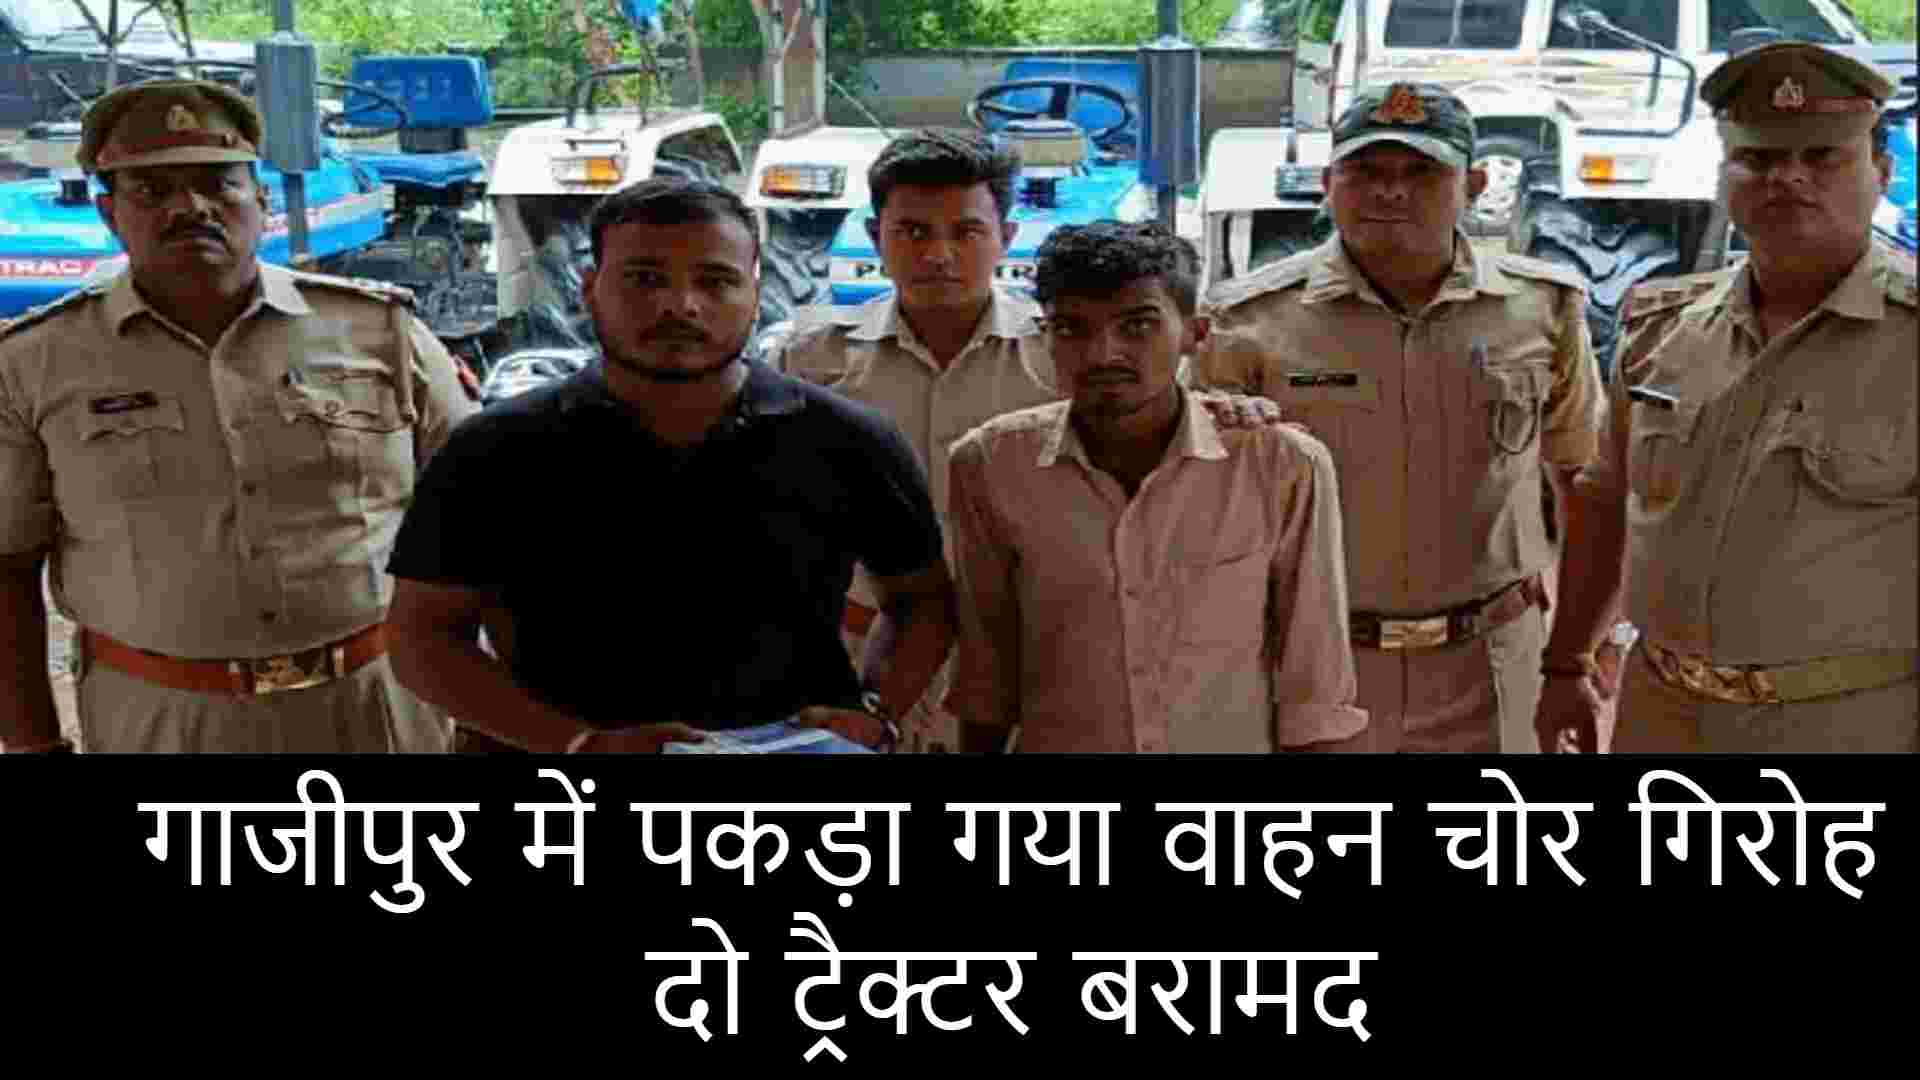 गाजीपुर में पकड़ा गया वाहन चोर गिरोह, दो ट्रैक्टर बरामद